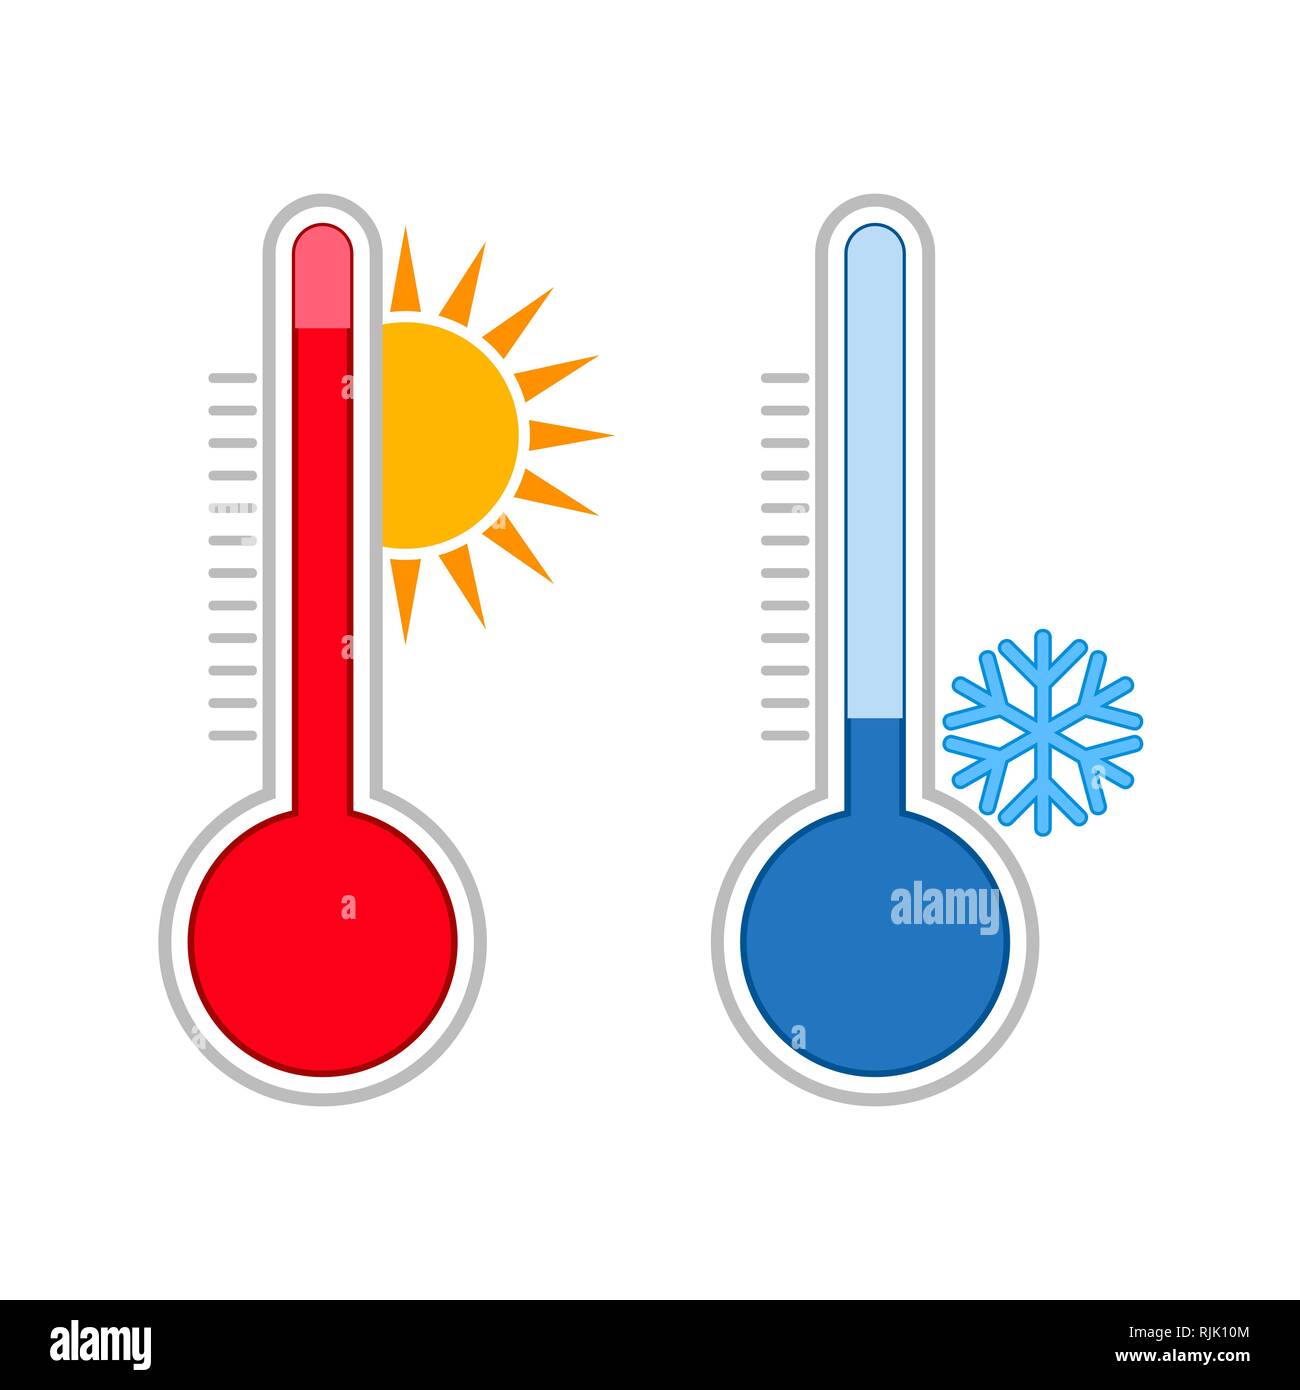 La meteorologia termometri. La misurazione di temperature calde e fredde. Il simbolo del fiocco di neve, sole icone. Illustrazione Vettoriale